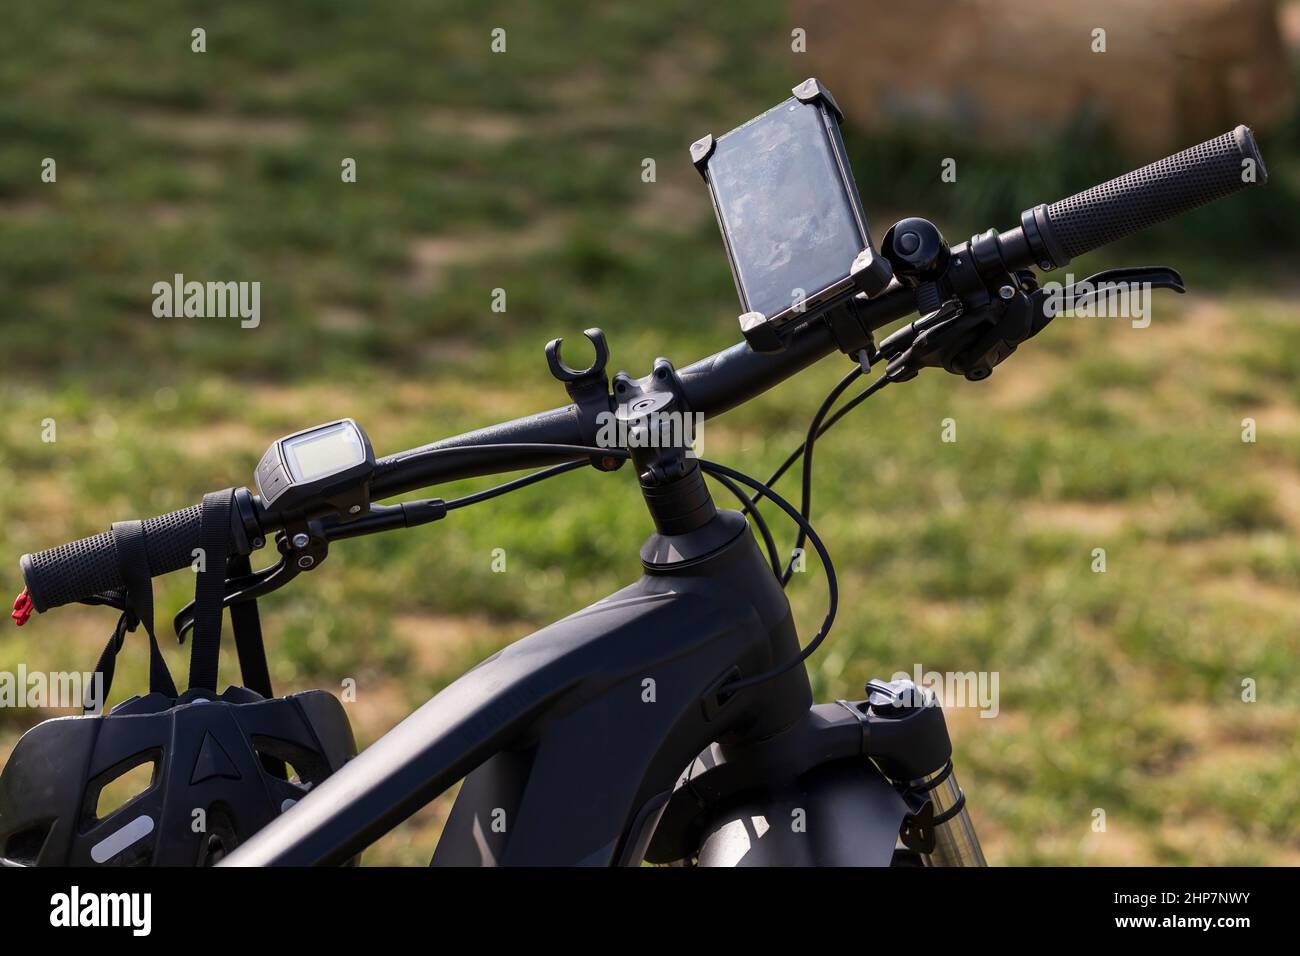 Elektrischer Fahrradlenker. Am Lenker ist ein Navigationscomputer angebracht und ein Fahrradhelm hängt an ihnen. Stockfoto